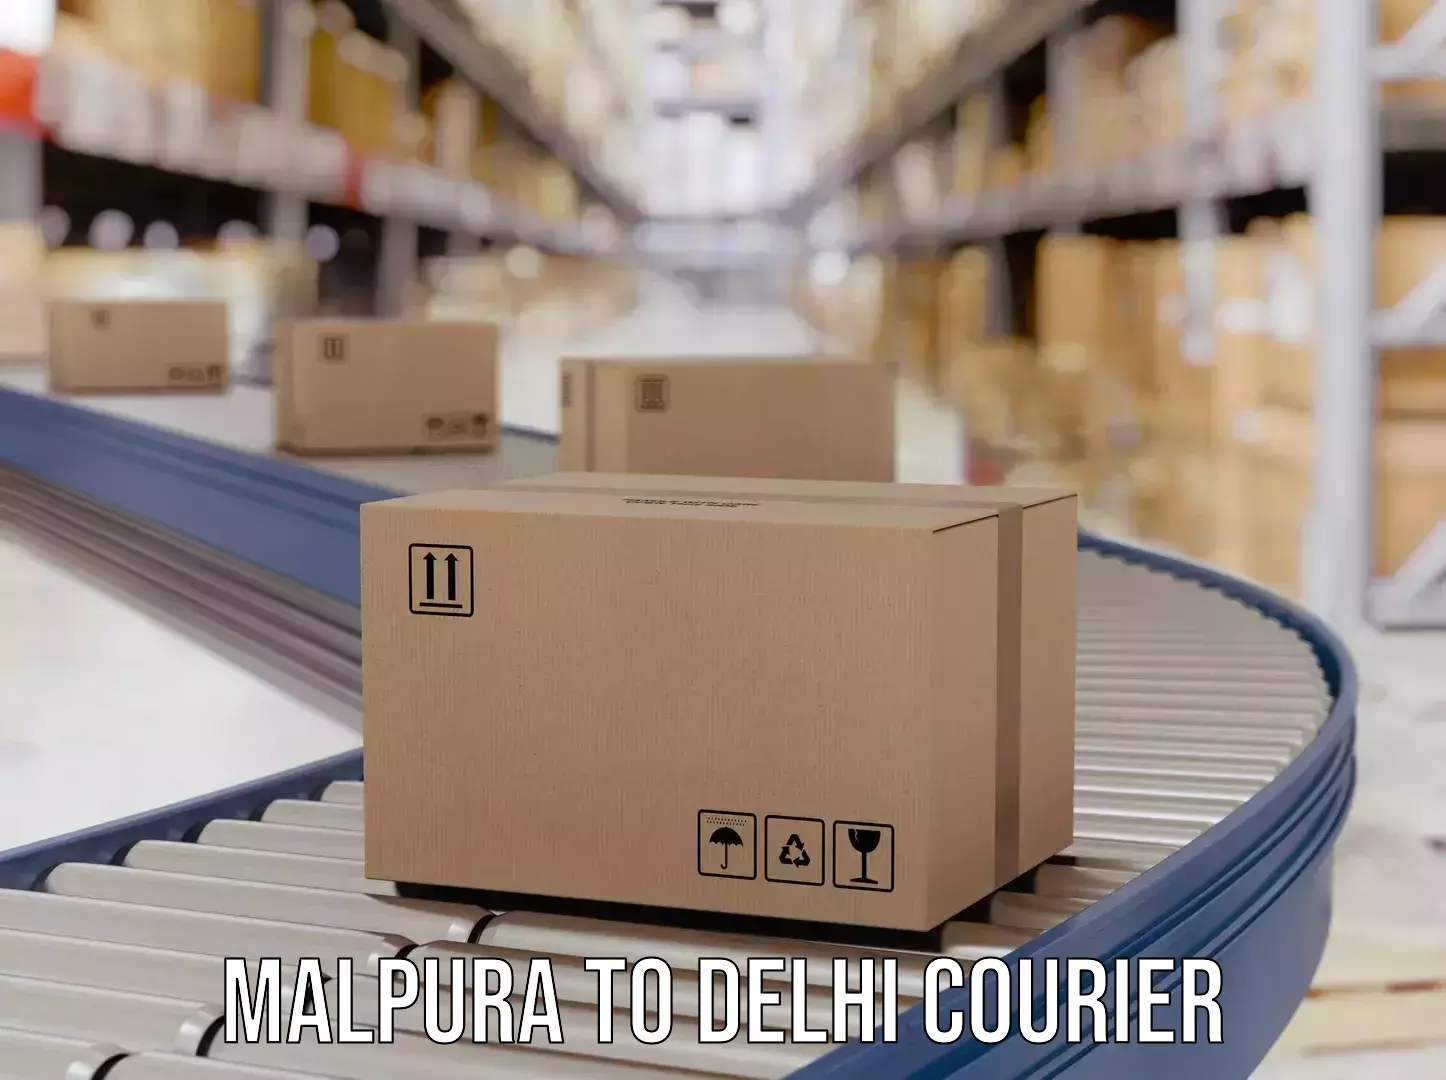 Weekend courier service Malpura to Delhi